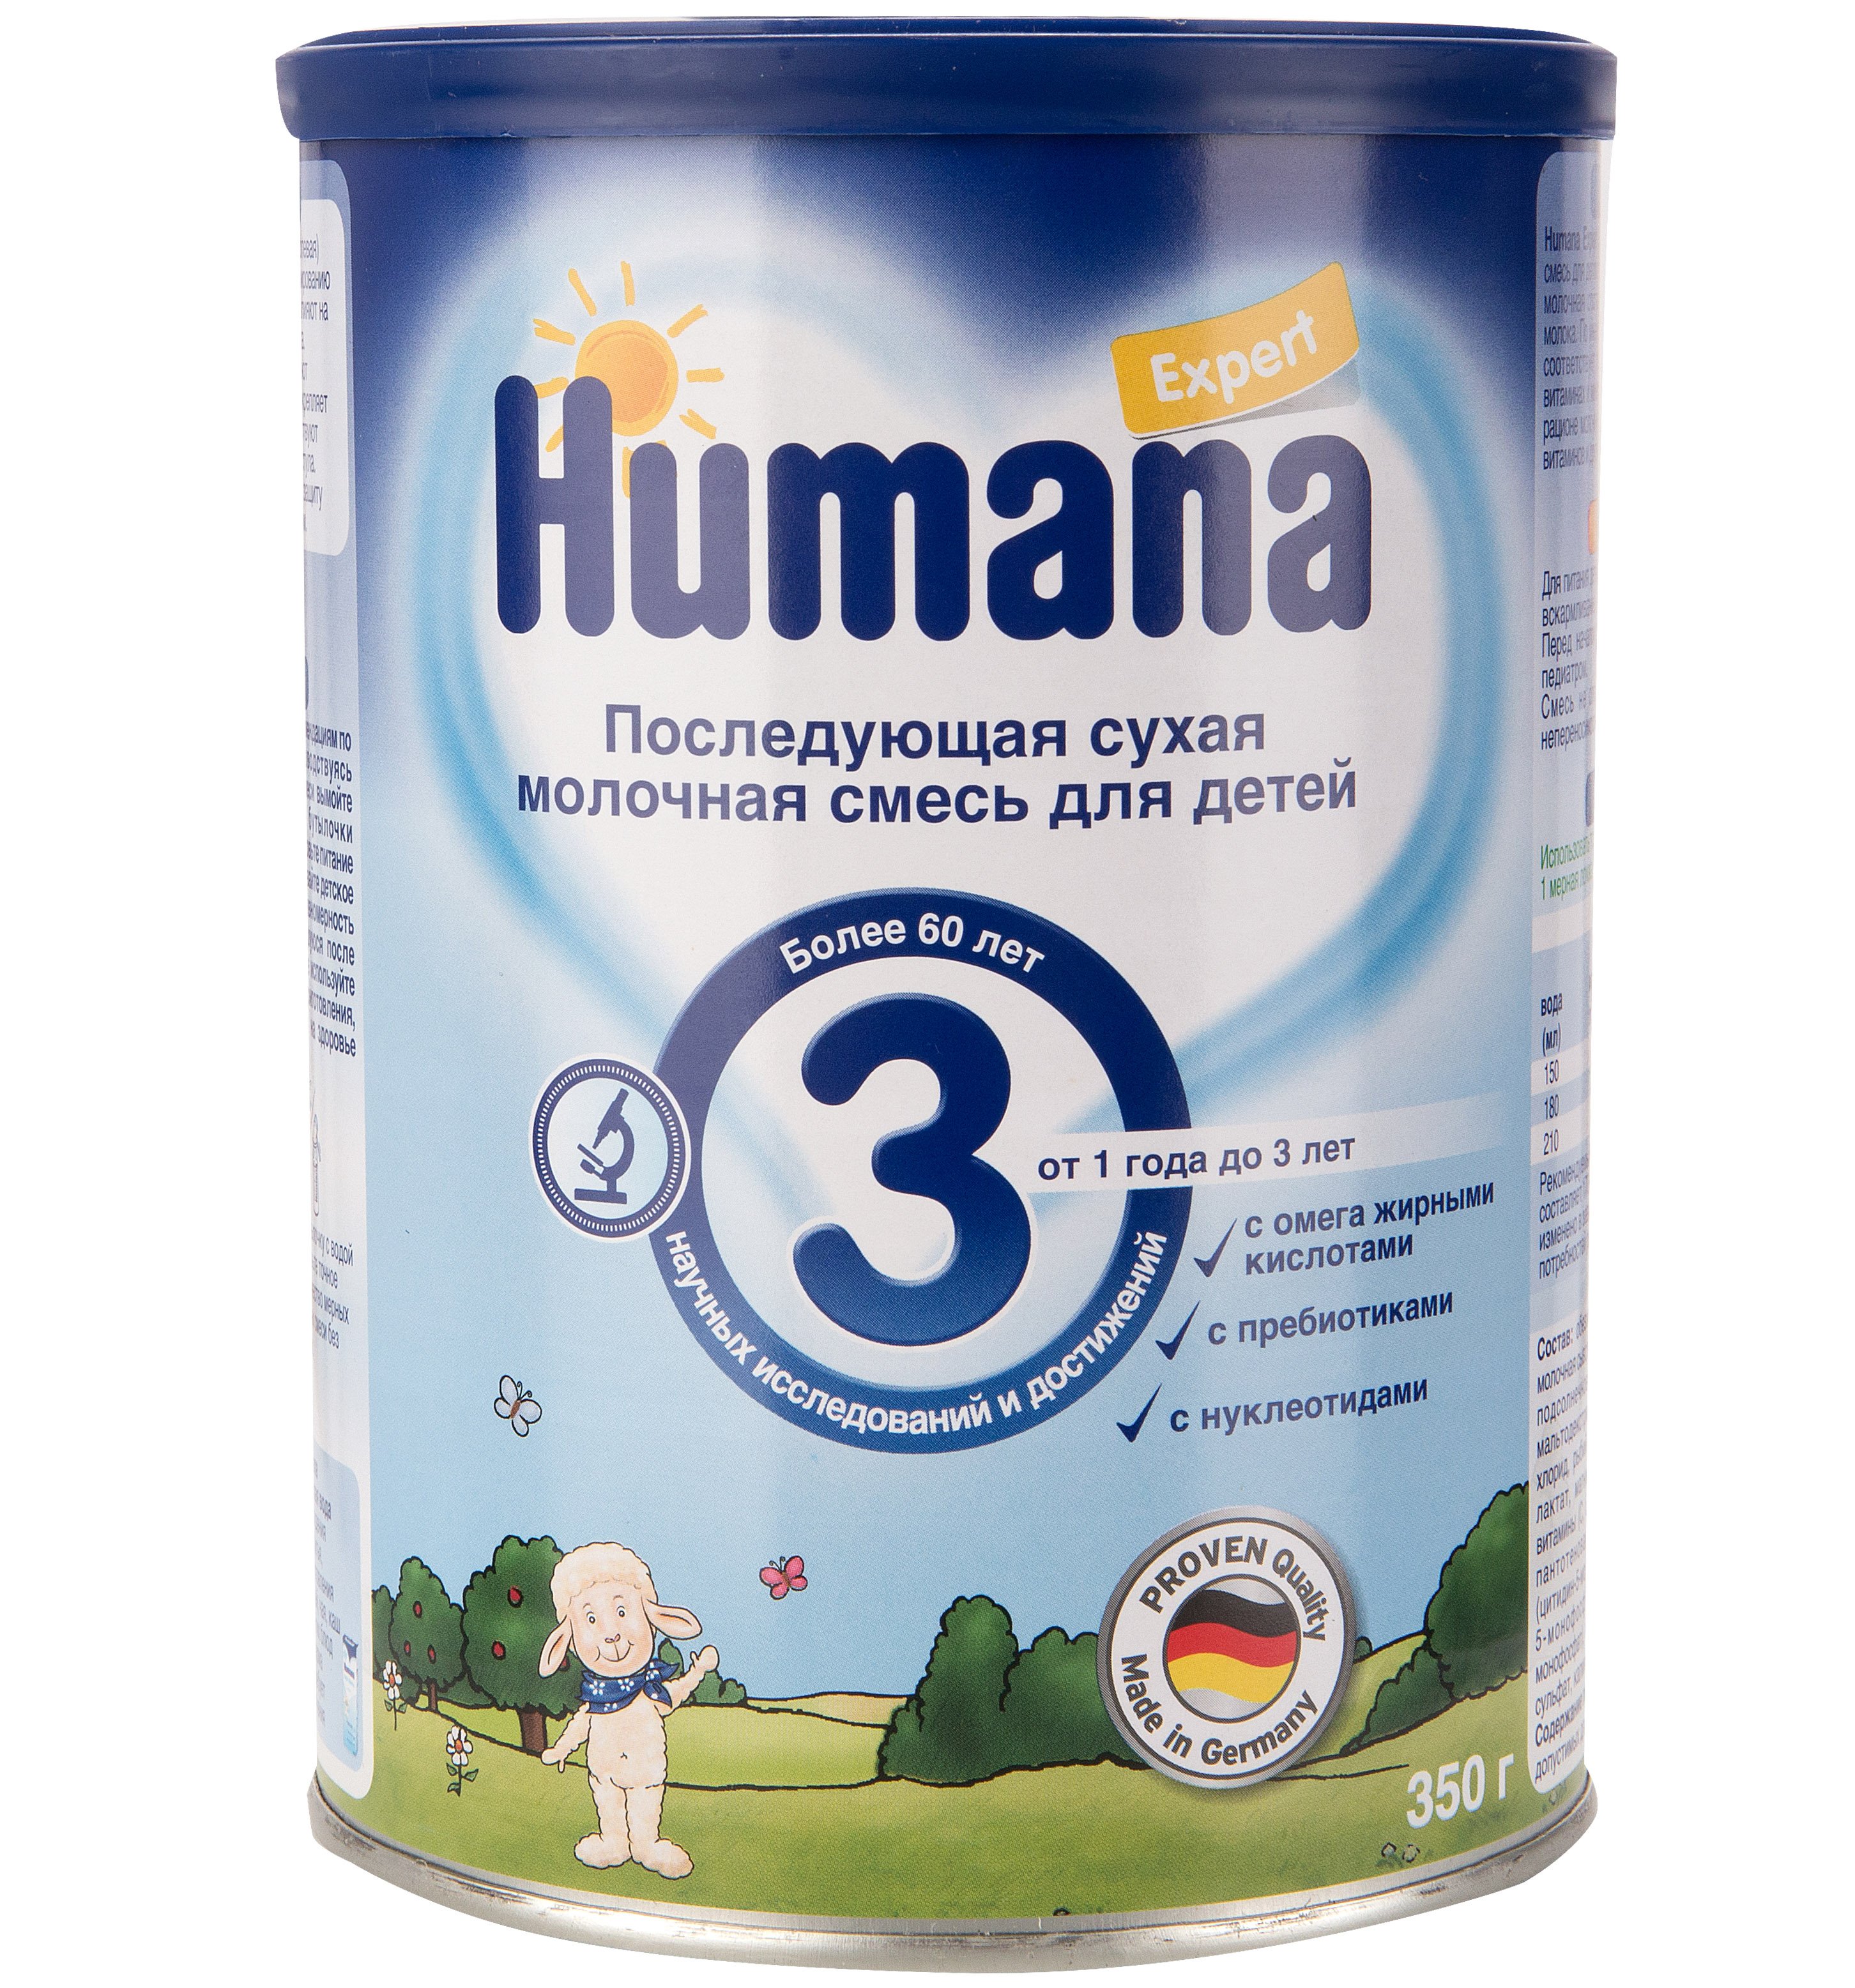 Хорошая смесь с 6 месяцев. Хумана лечебная смесь humana. Хумана 2 смесь. Смесь humana Expert 3 (от 1 года до 3 лет) 350 г. Детское питание смесь смесь Хумана 1.